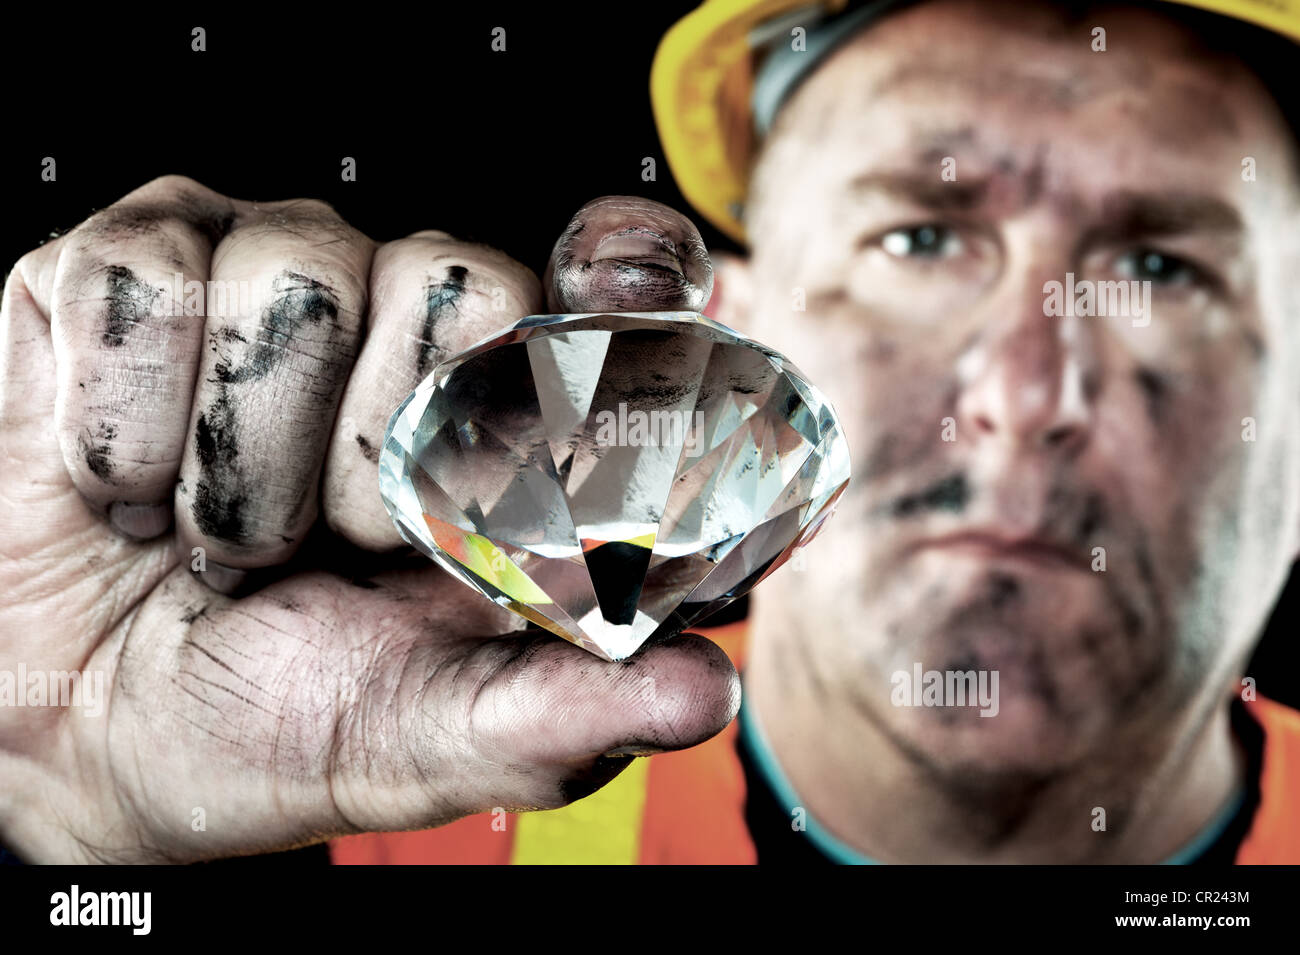 Una minera de diamantes sucios cubierta de hollín muestra una preciosa joya encontrada en una mina de carbón. Foto de stock